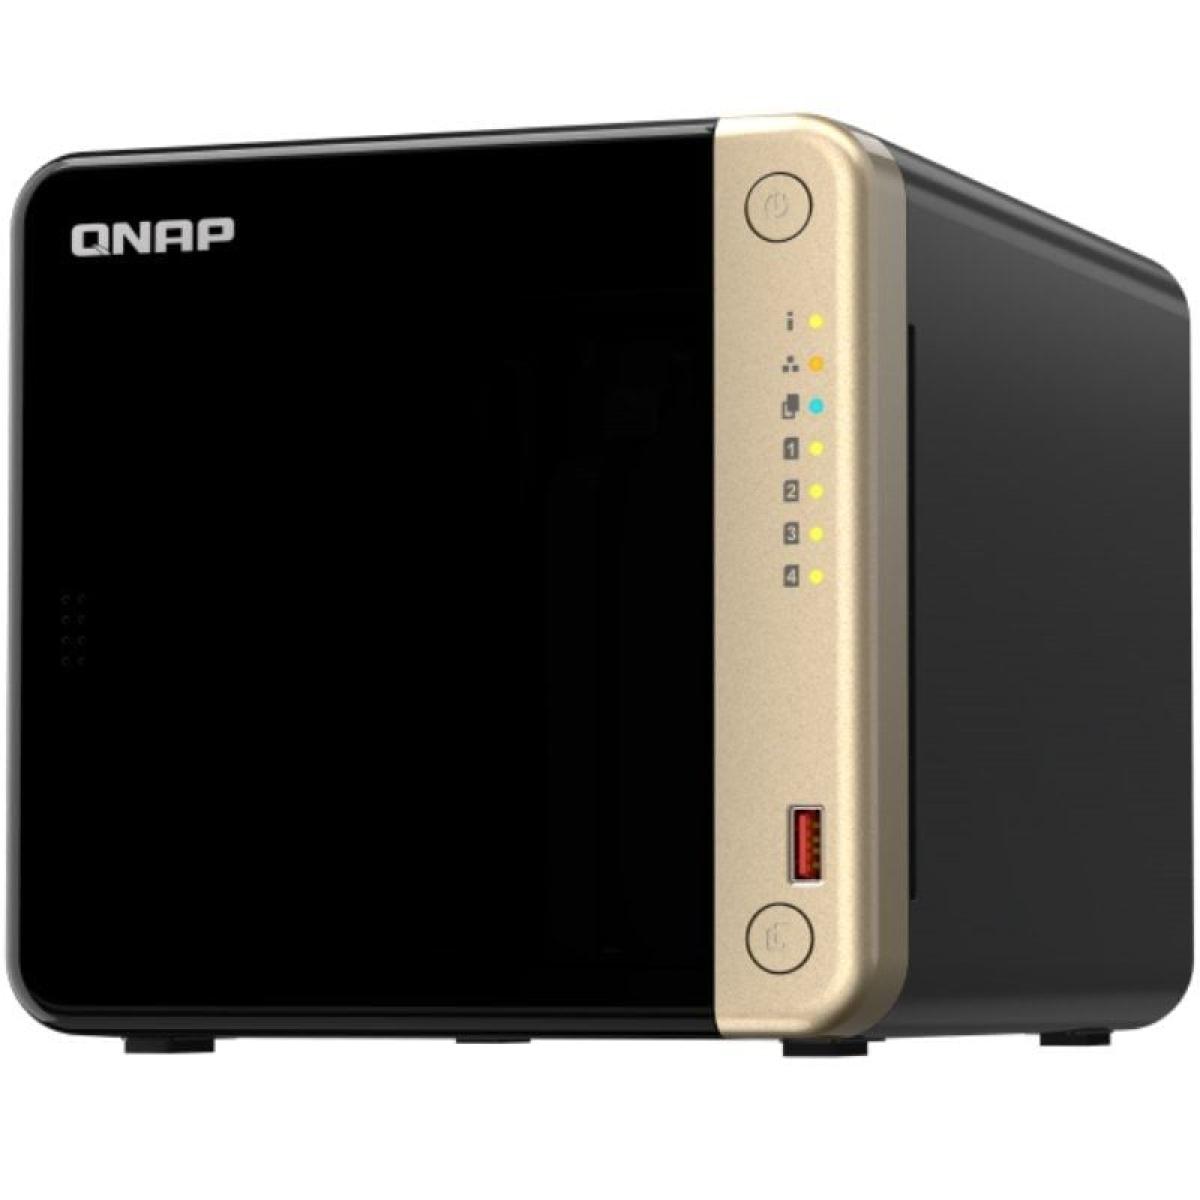 NAS QNAP TS-464-4G/ 4 BAHIAS 3.5"- 2.5"/ 4GB DDR4/ FORMATO TORRE